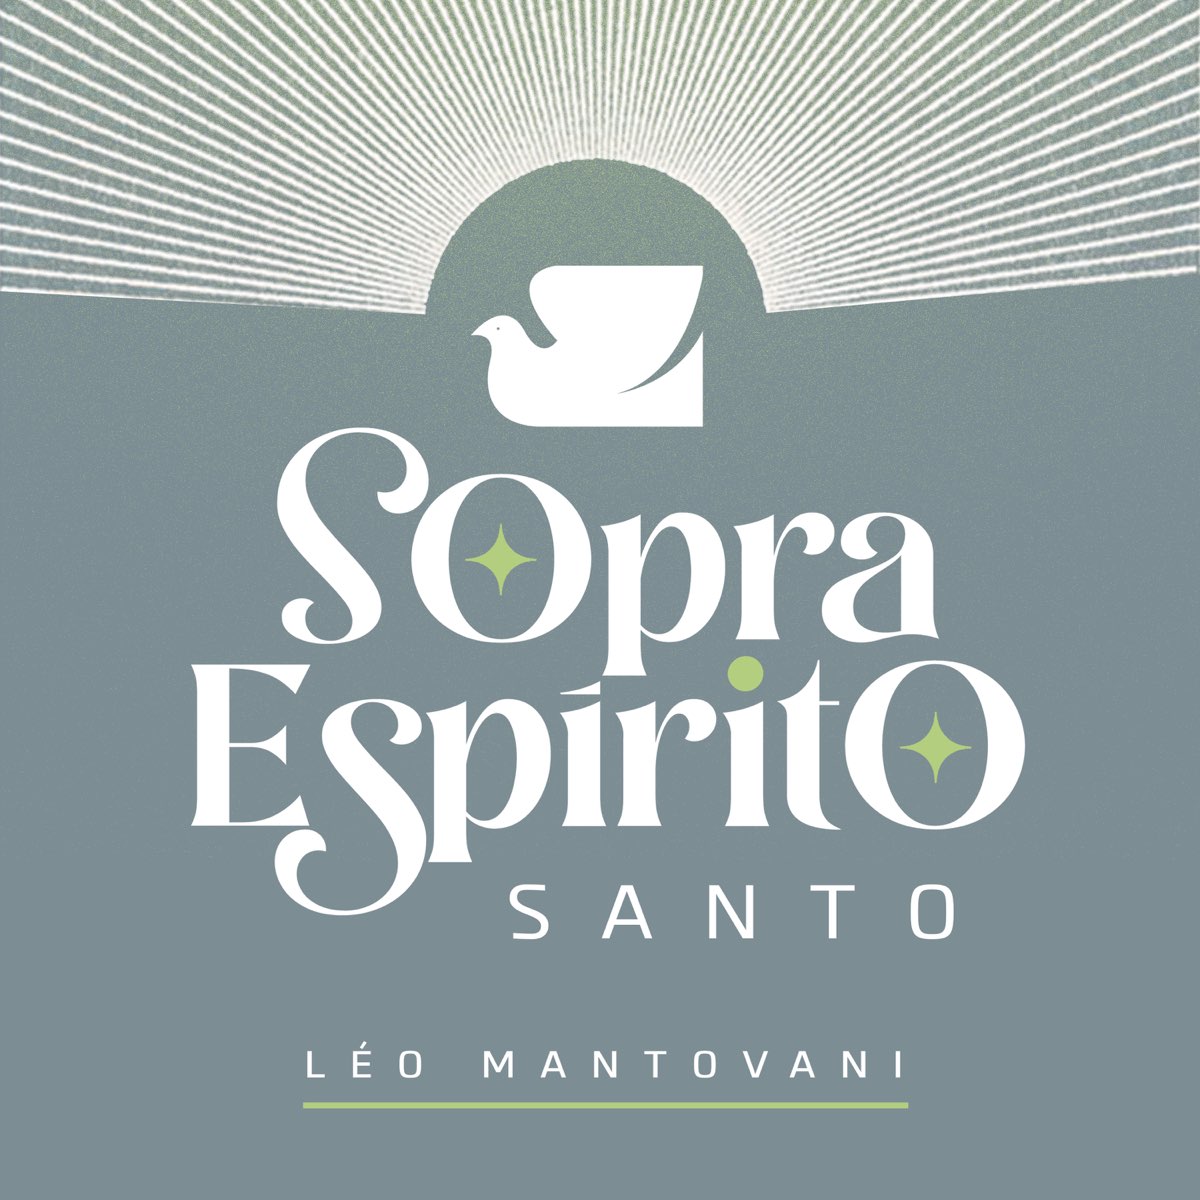 Leo Mantovani - Apple Music